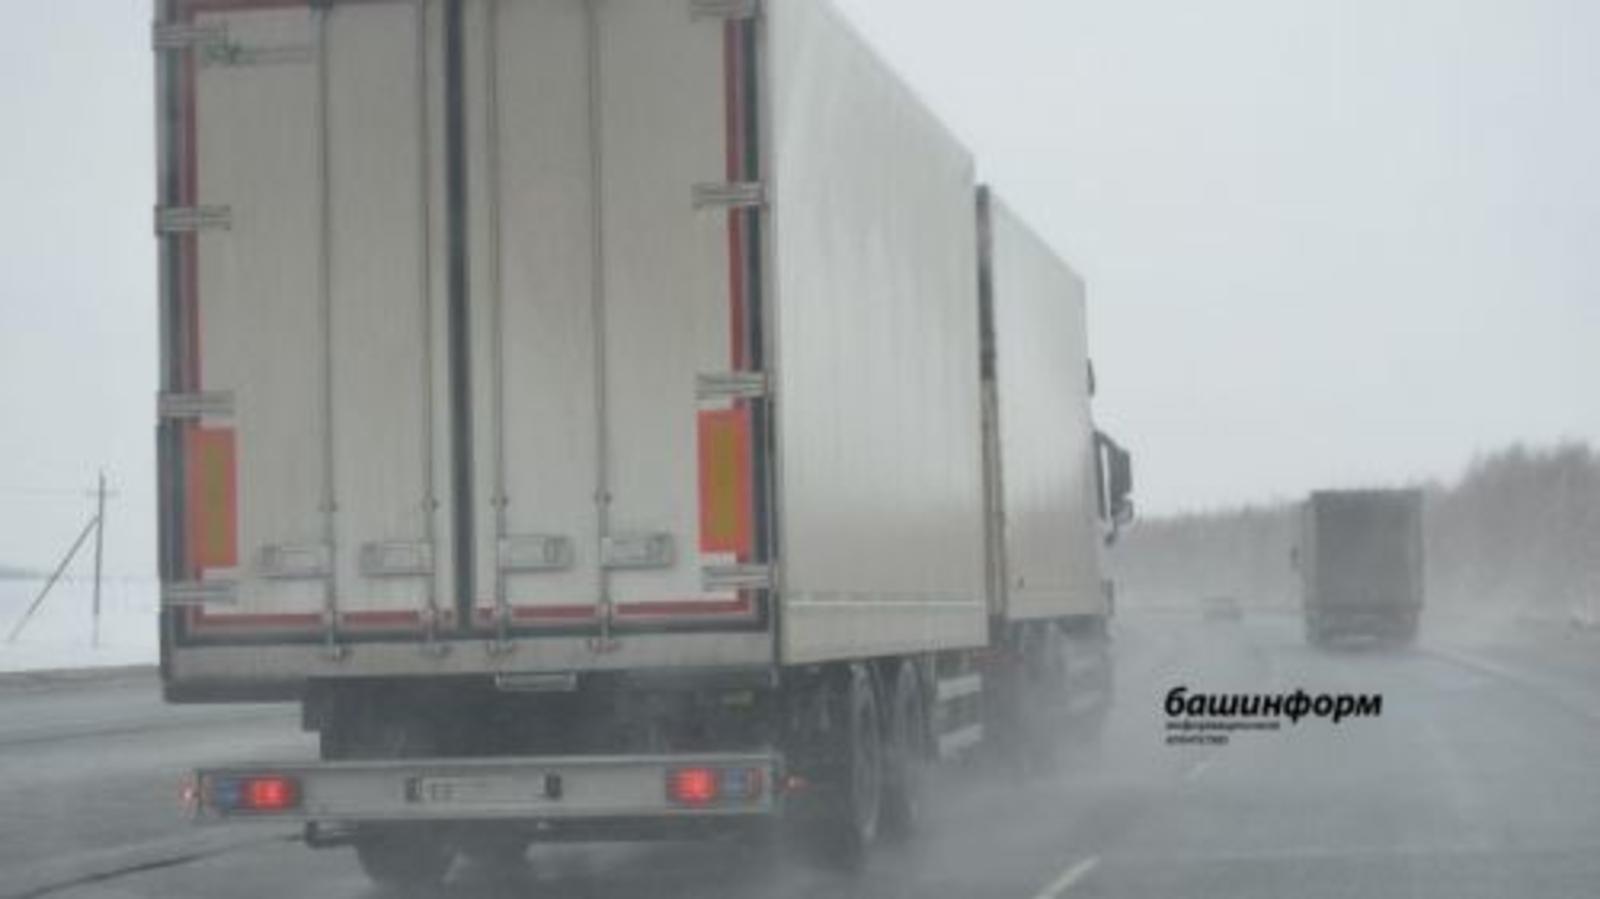 МЧС по Башкирии предупреждает жителей региона о гололедице, усилении ветра и дымке на дорогах